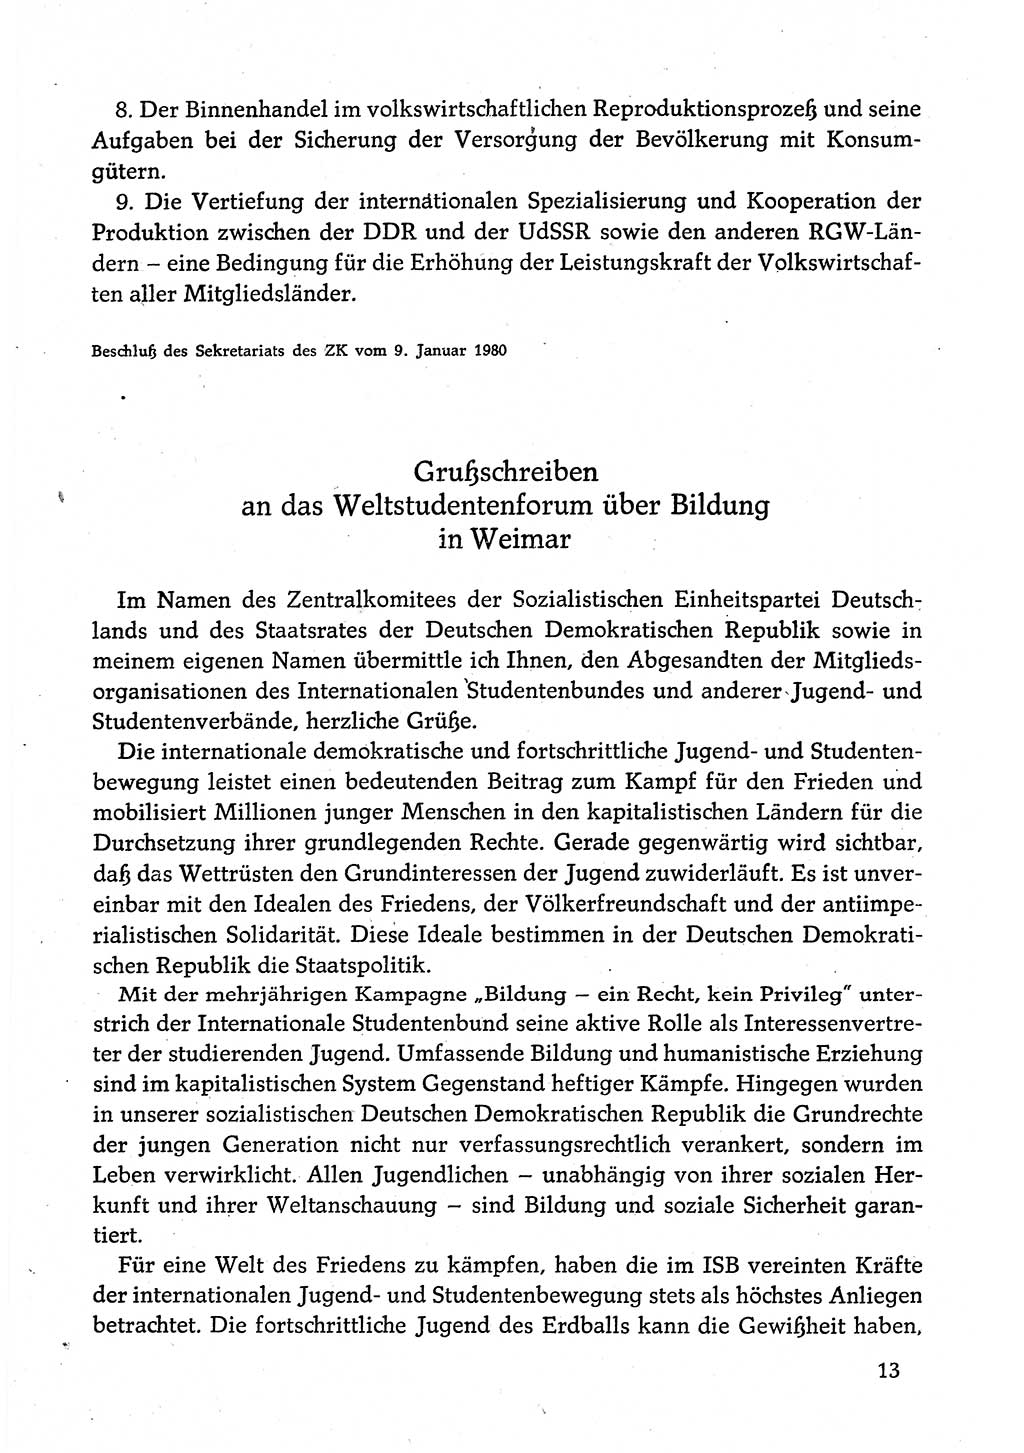 Dokumente der Sozialistischen Einheitspartei Deutschlands (SED) [Deutsche Demokratische Republik (DDR)] 1980-1981, Seite 13 (Dok. SED DDR 1980-1981, S. 13)